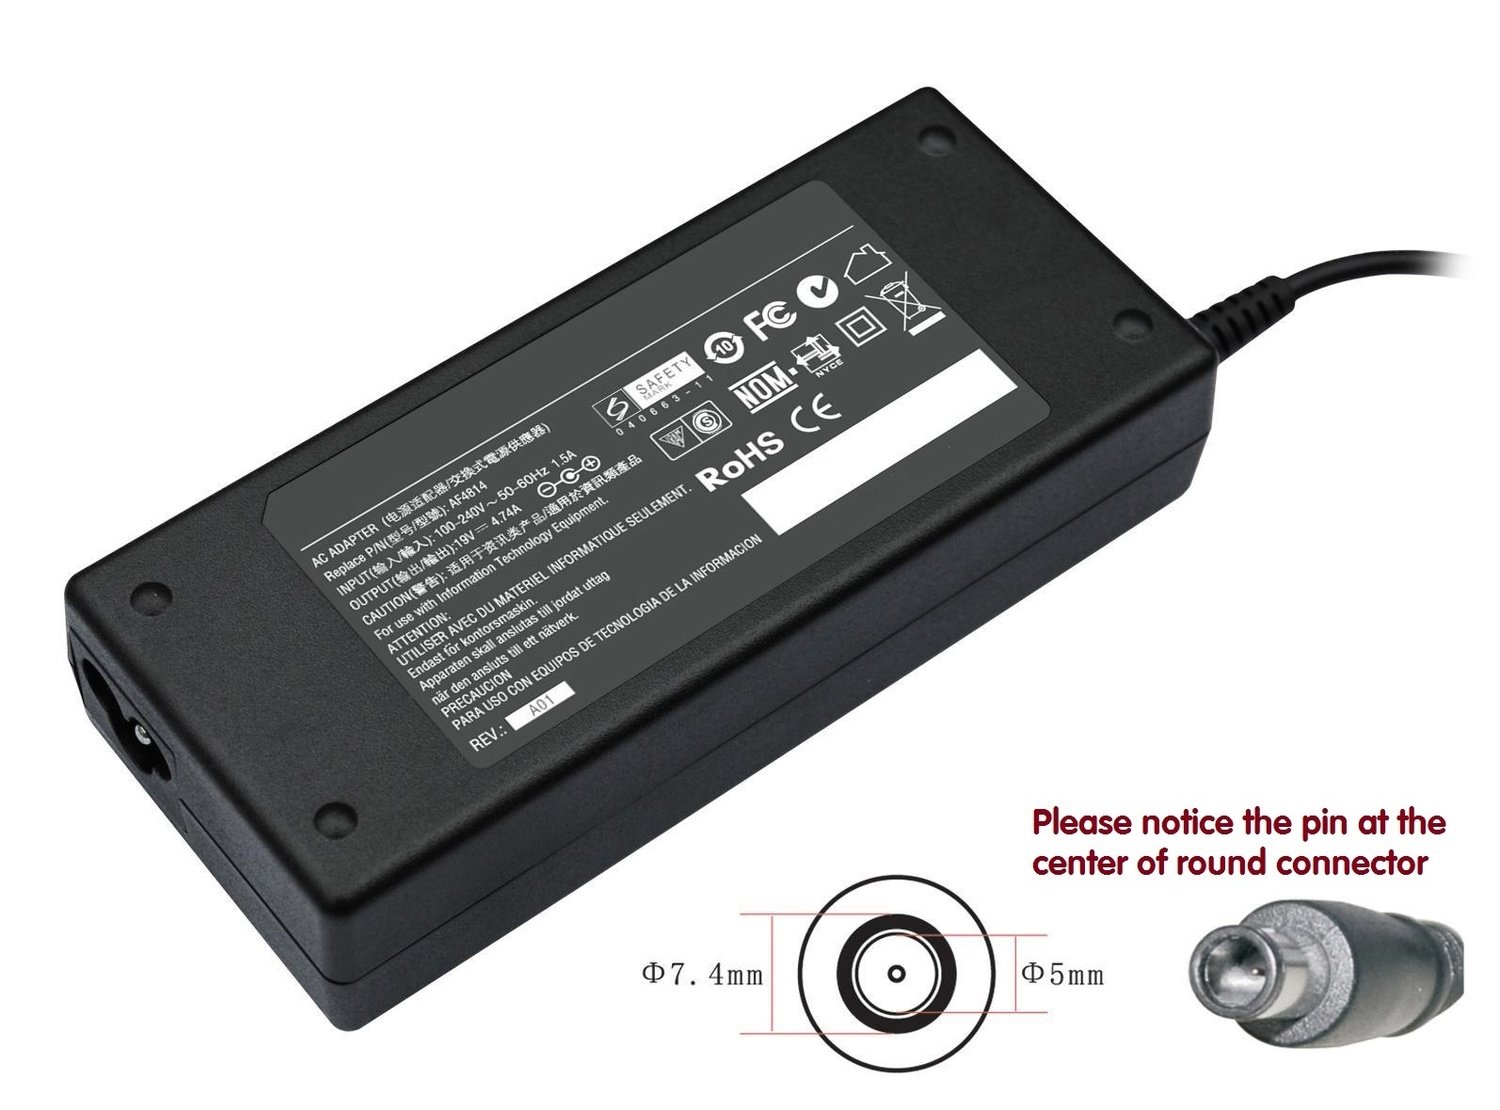 Dell Latitude D420 D430 D520 D530 D620 D630 E5400 E5500 Compatible laptop charger / ac power adaptor